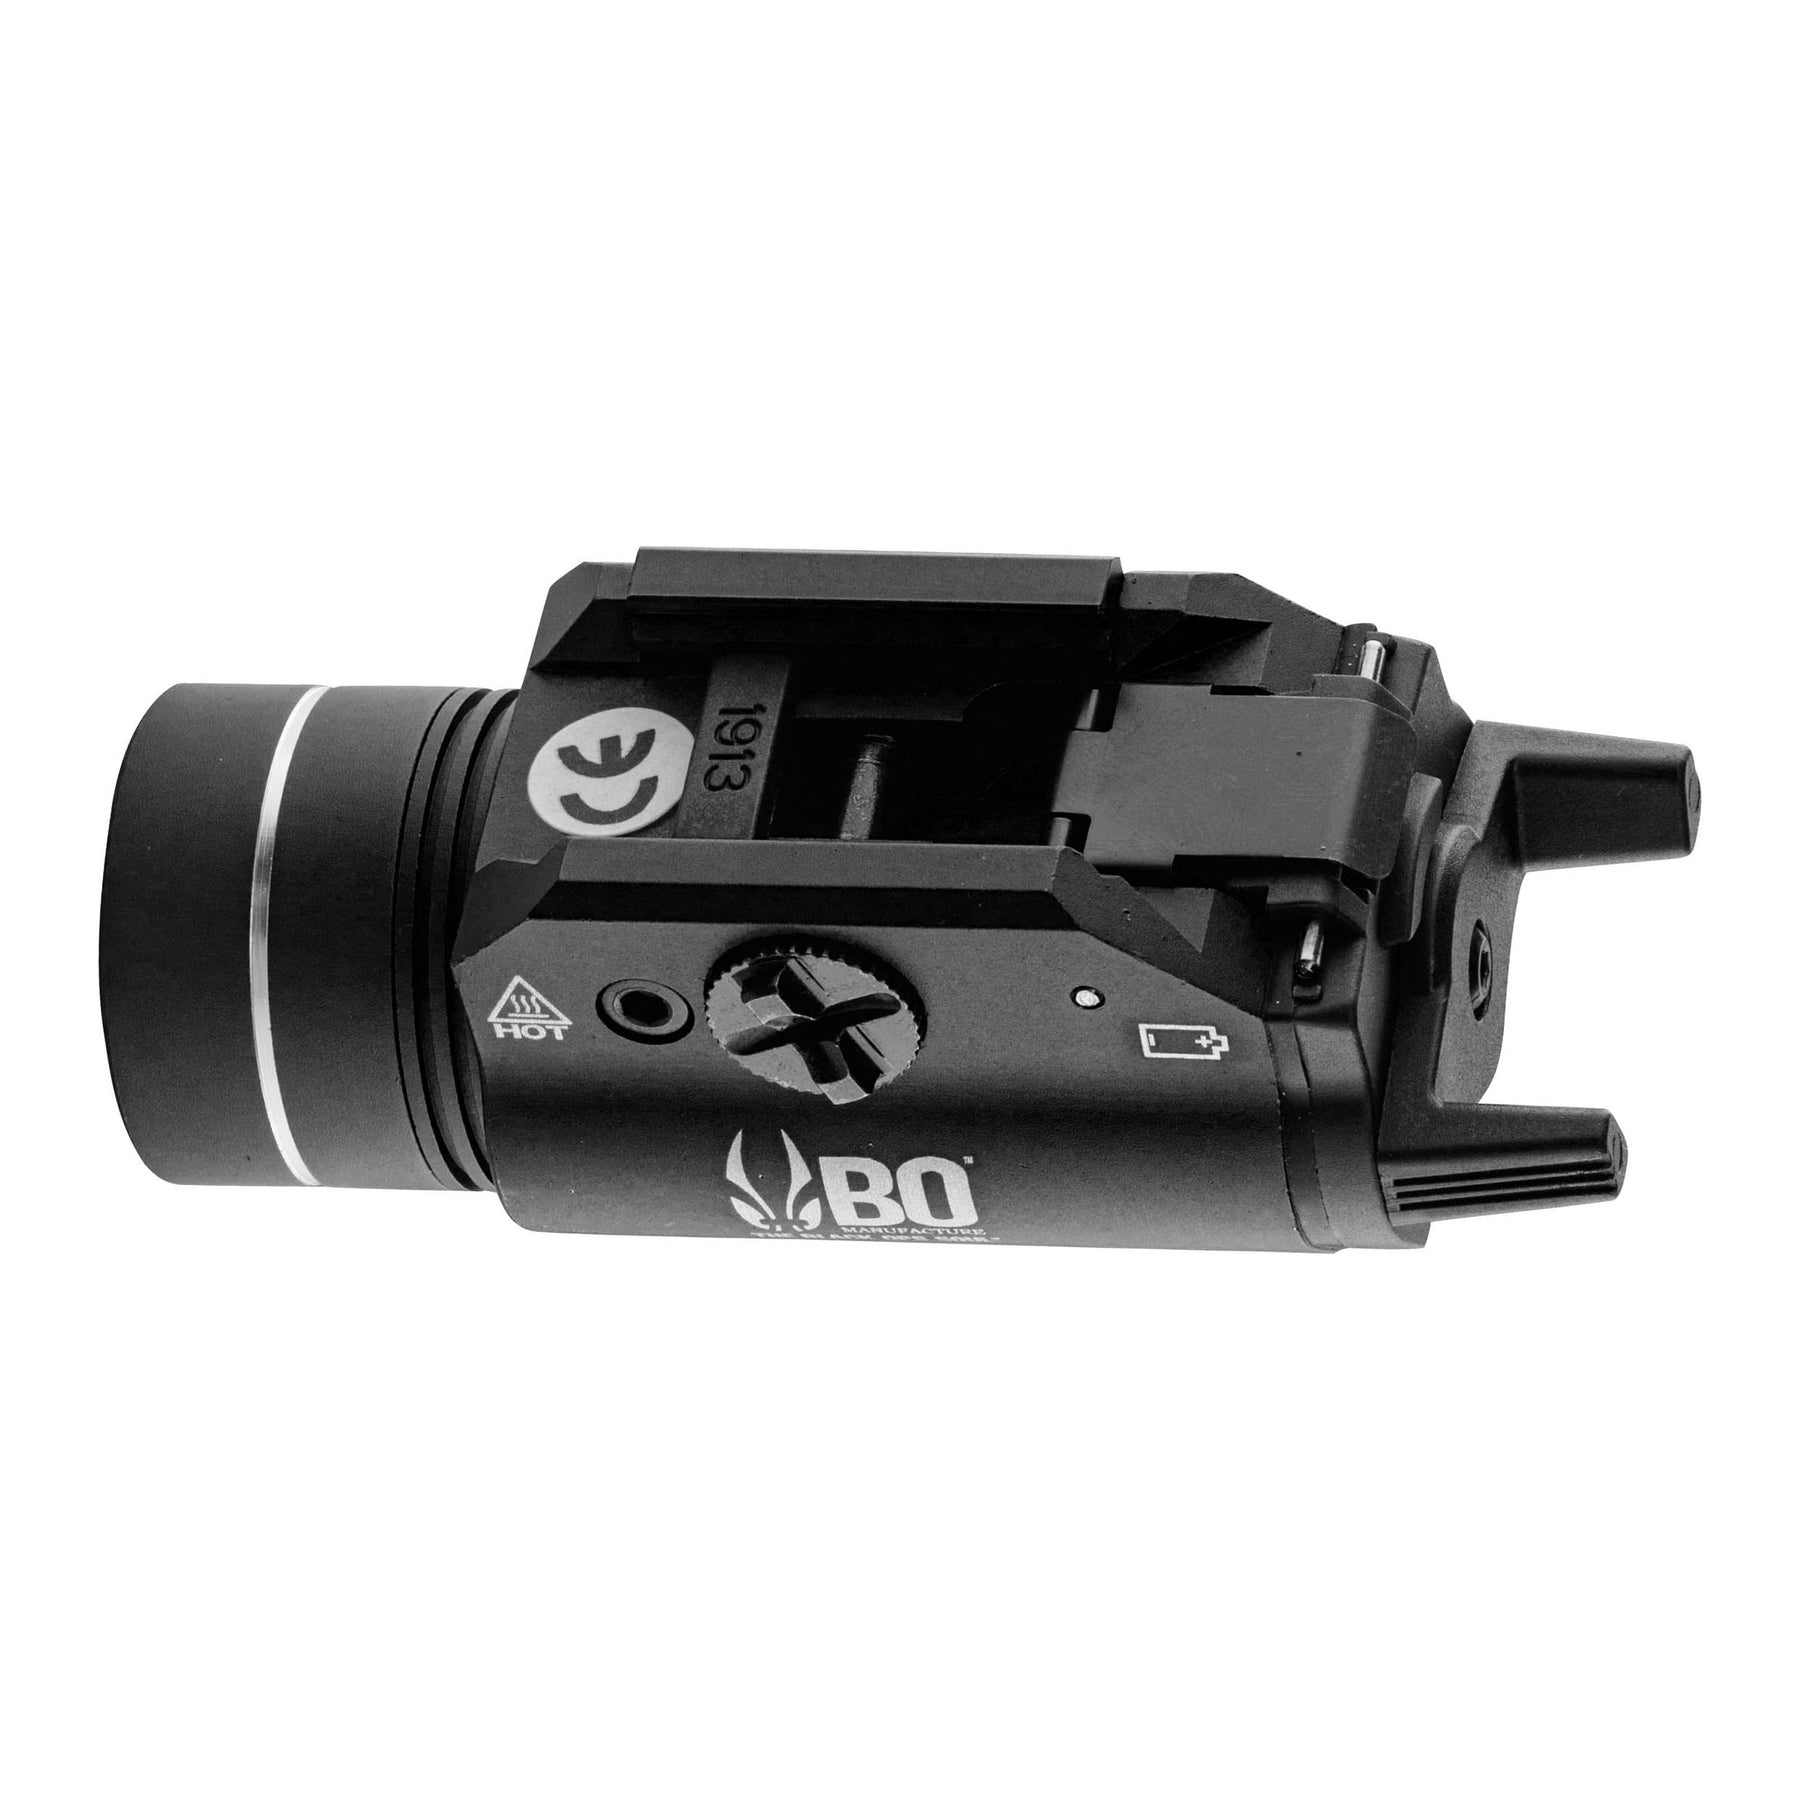 Lampe LED pistolet BO type TLR-1 220 lumens